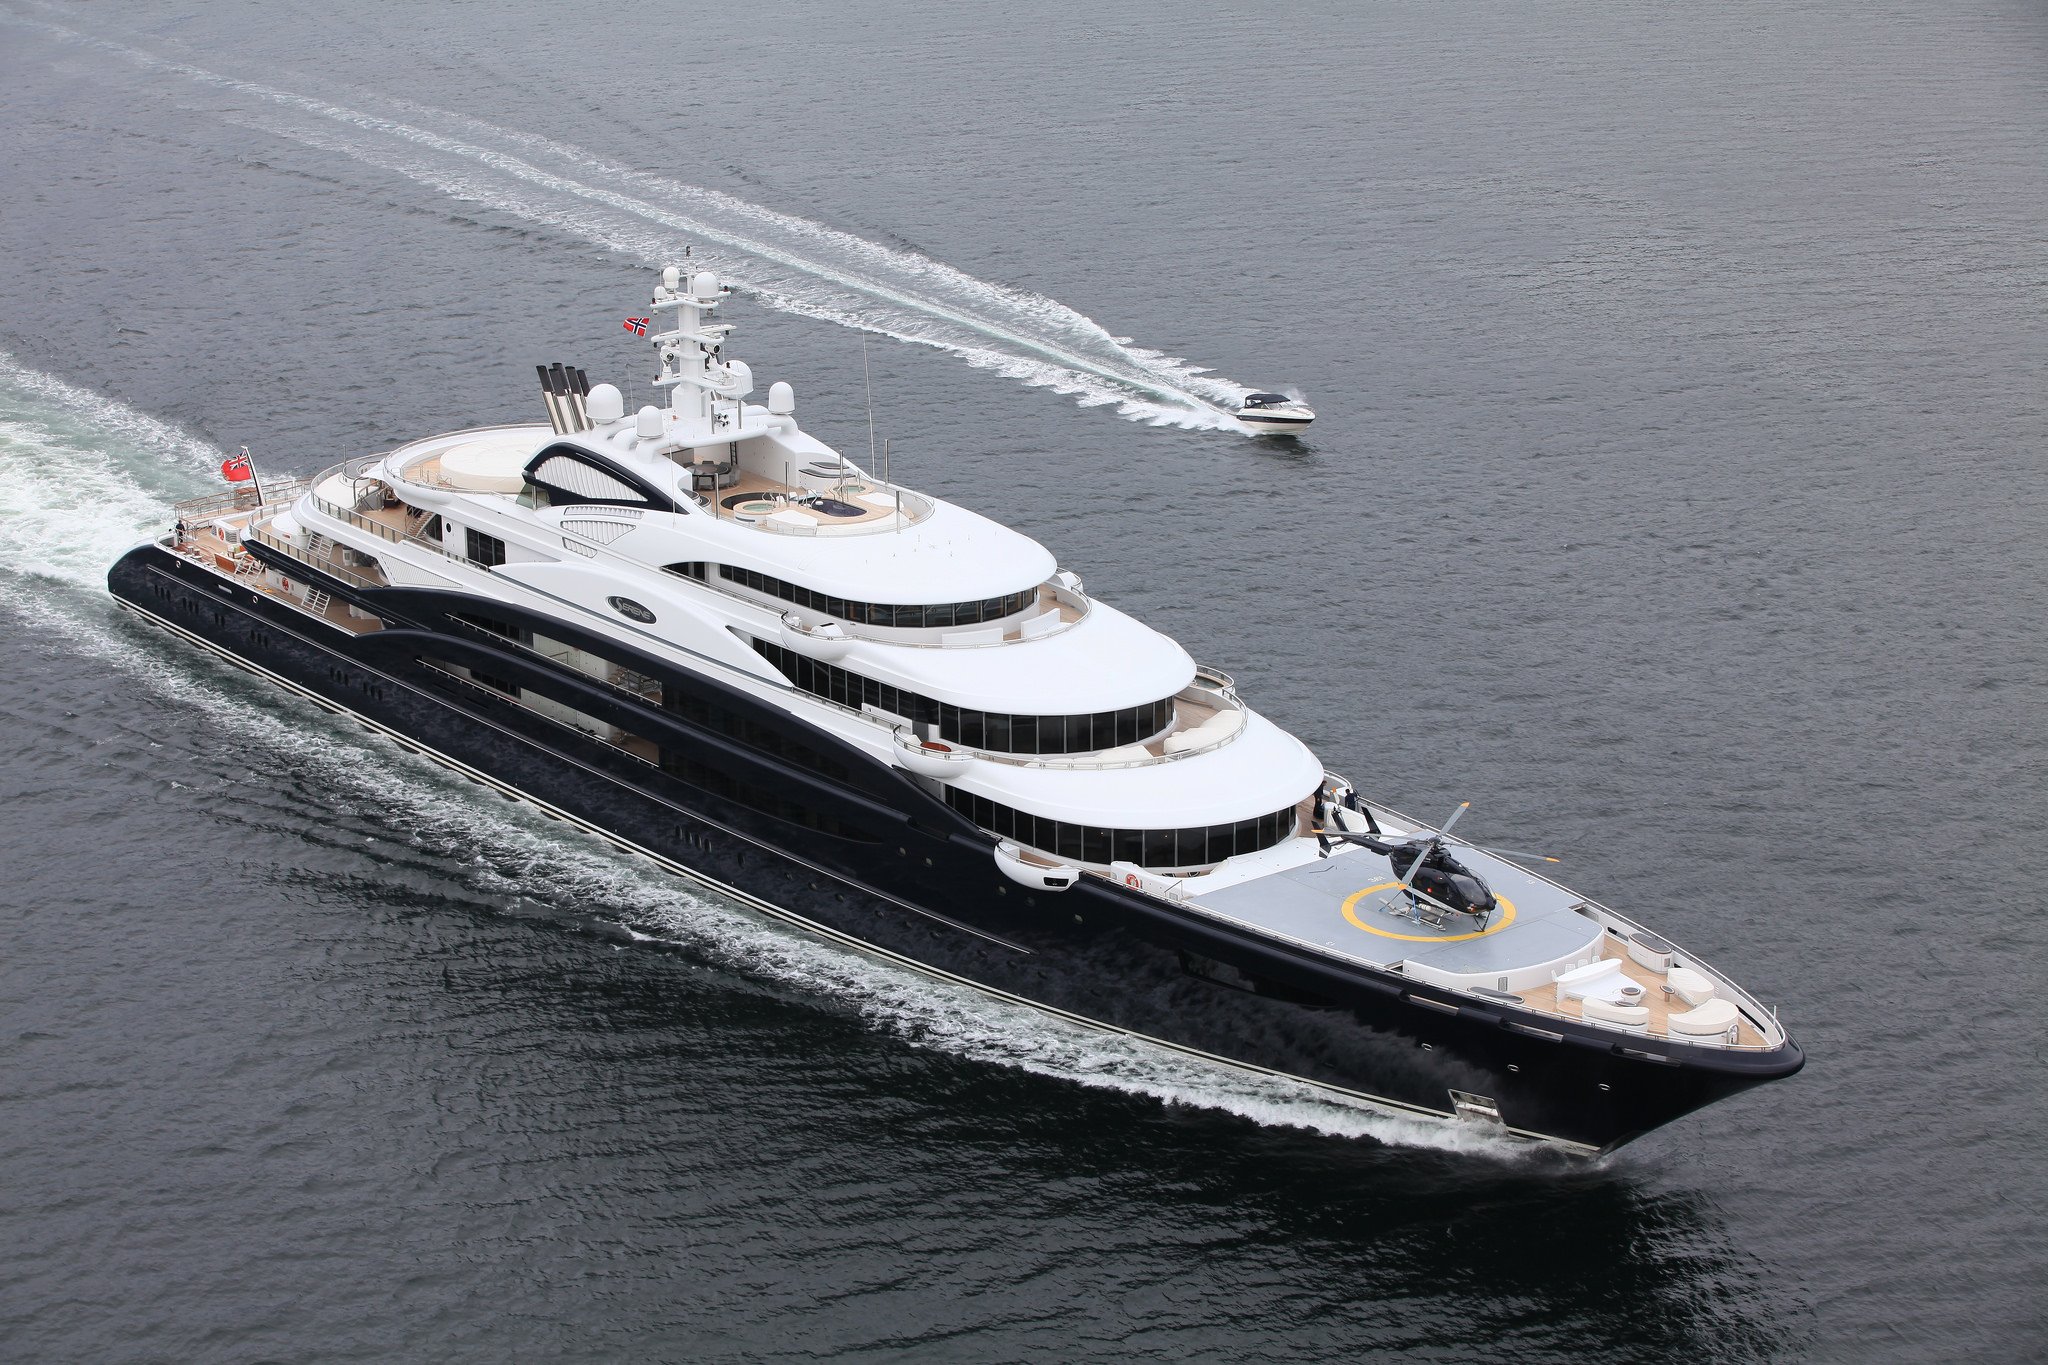 SERENE Yacht • Yuri Shefler $400M Superyacht • Fincantieri • 2011